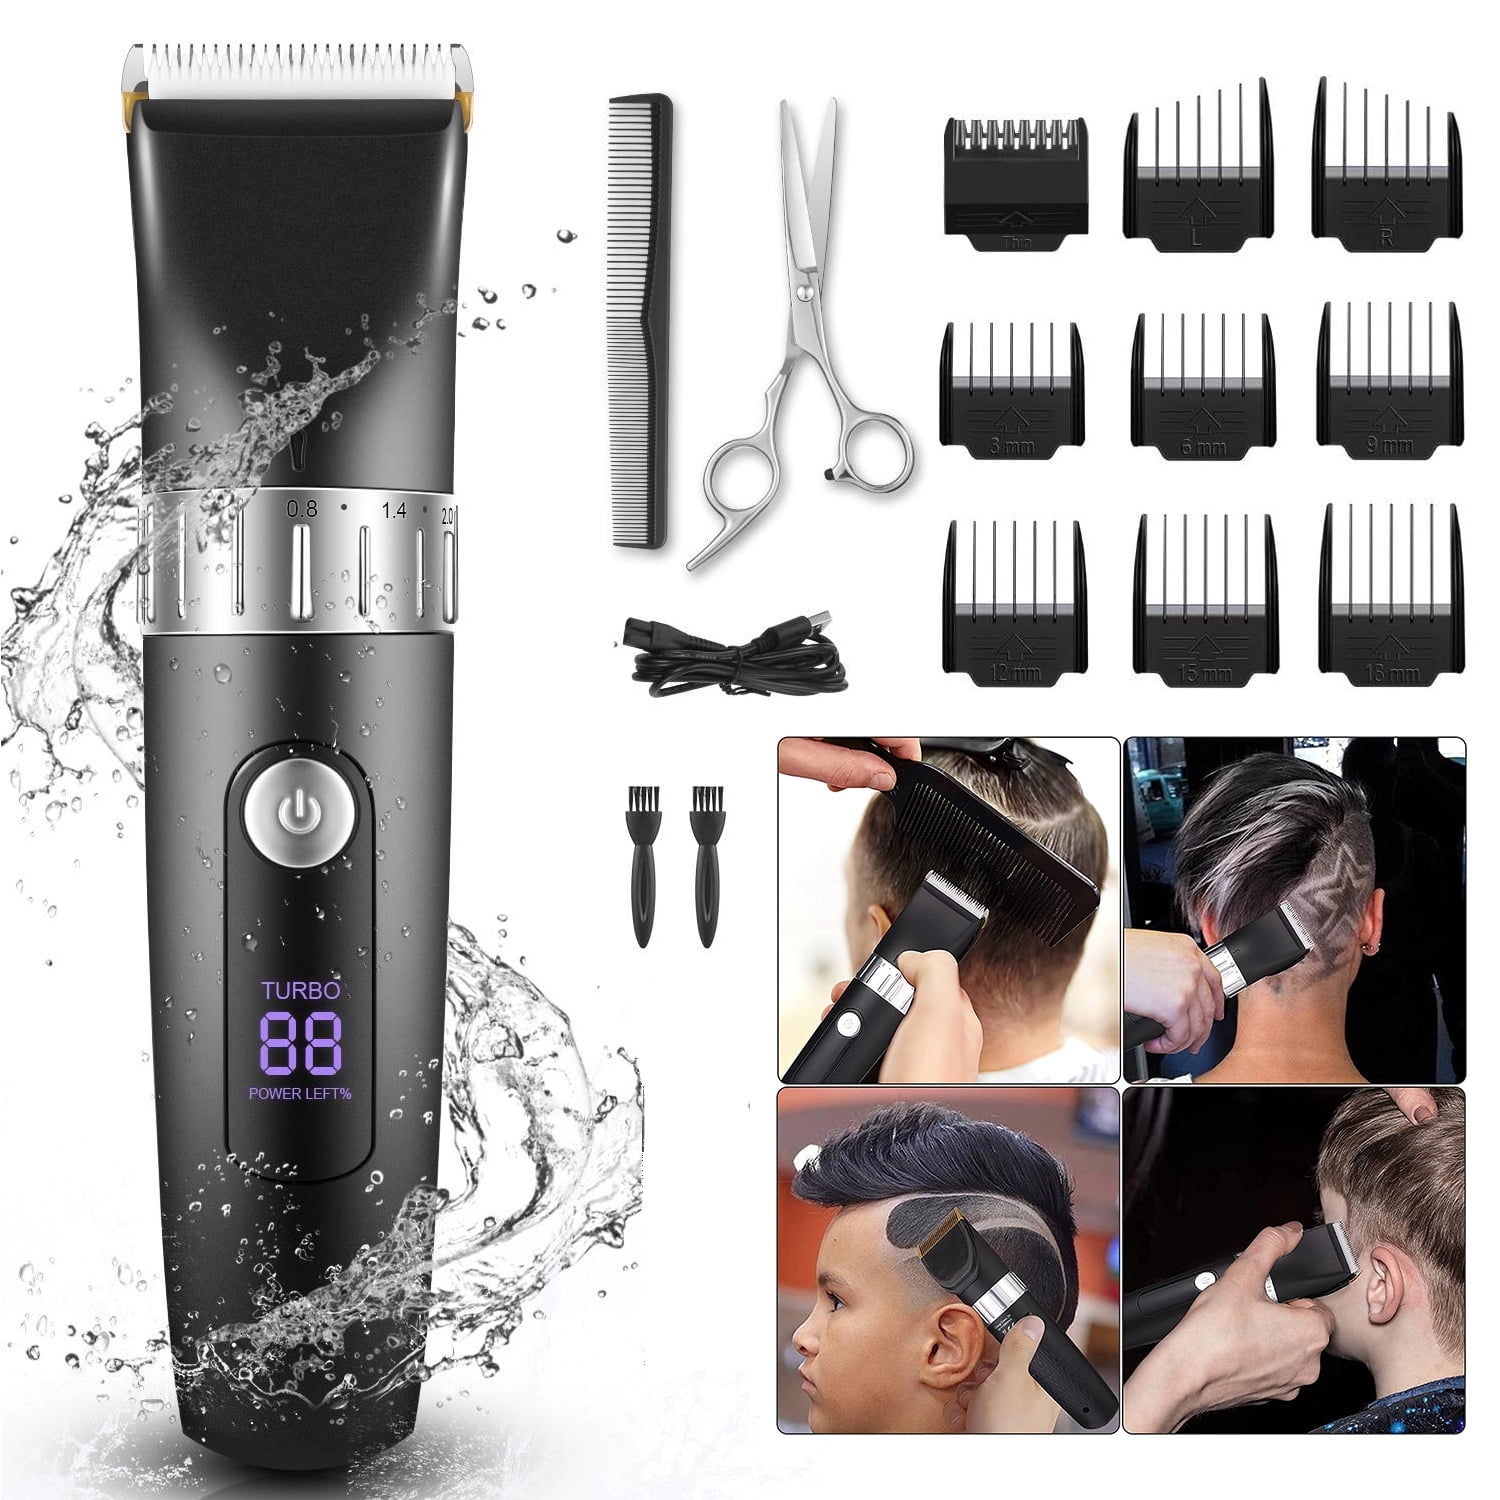 Buy IPX7 Bộ dụng cụ chải tóc nam chống thấm nước dành cho nam, Tông đơ cho  râu, đầu, cơ thể và khuôn mặt với 9 tông đơ cắt tóc Online at